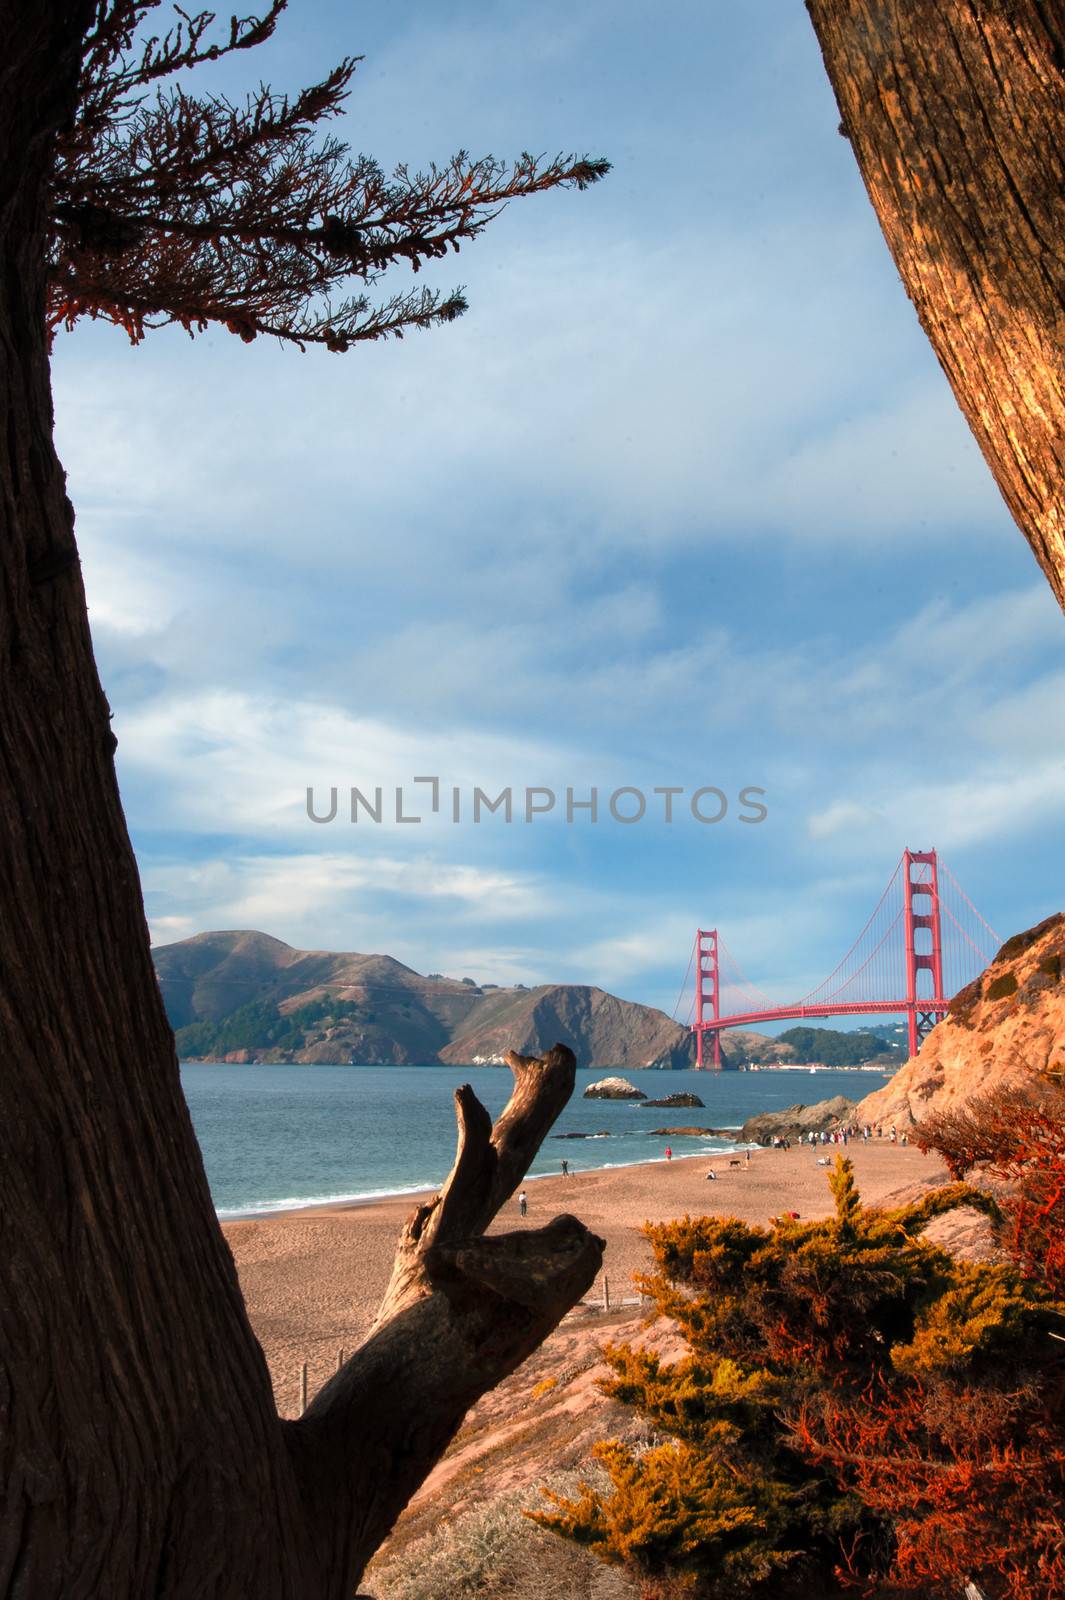 Golden gate Bridge over a bay, San Francisco Bay, San Francisco, California, USA